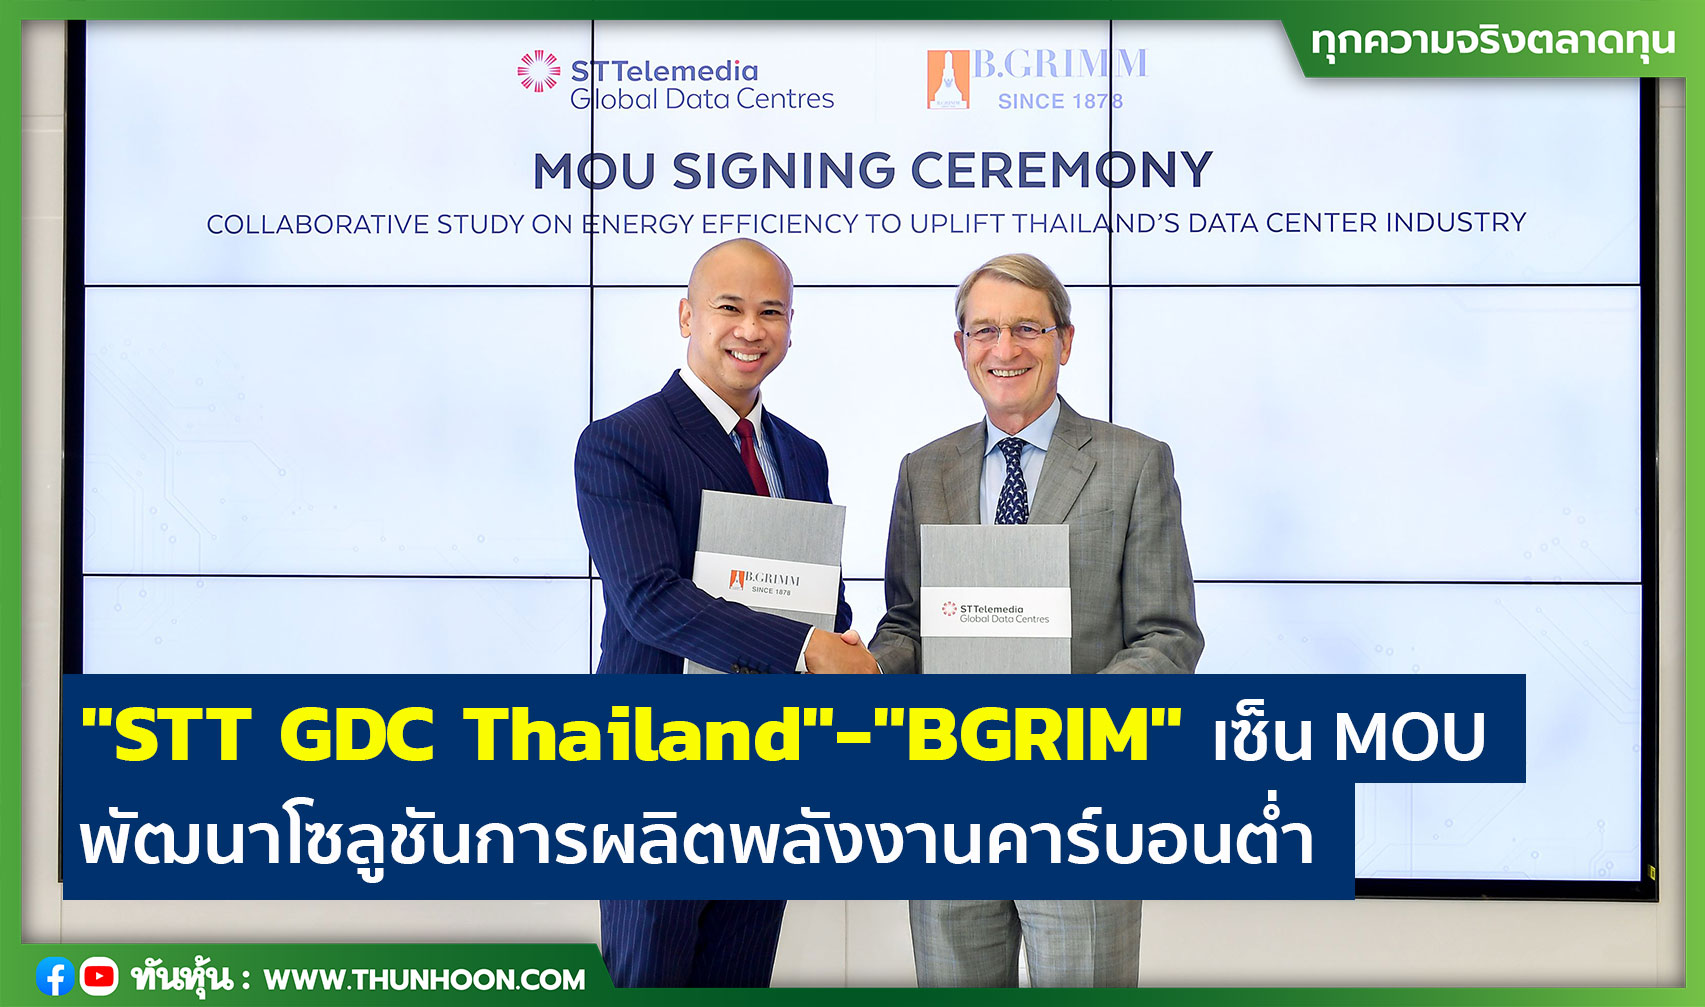 "STT GDC Thailand"-"BGRIM" เซ็น MOU พัฒนาโซลูชันการผลิตพลังงานคาร์บอนต่ำ